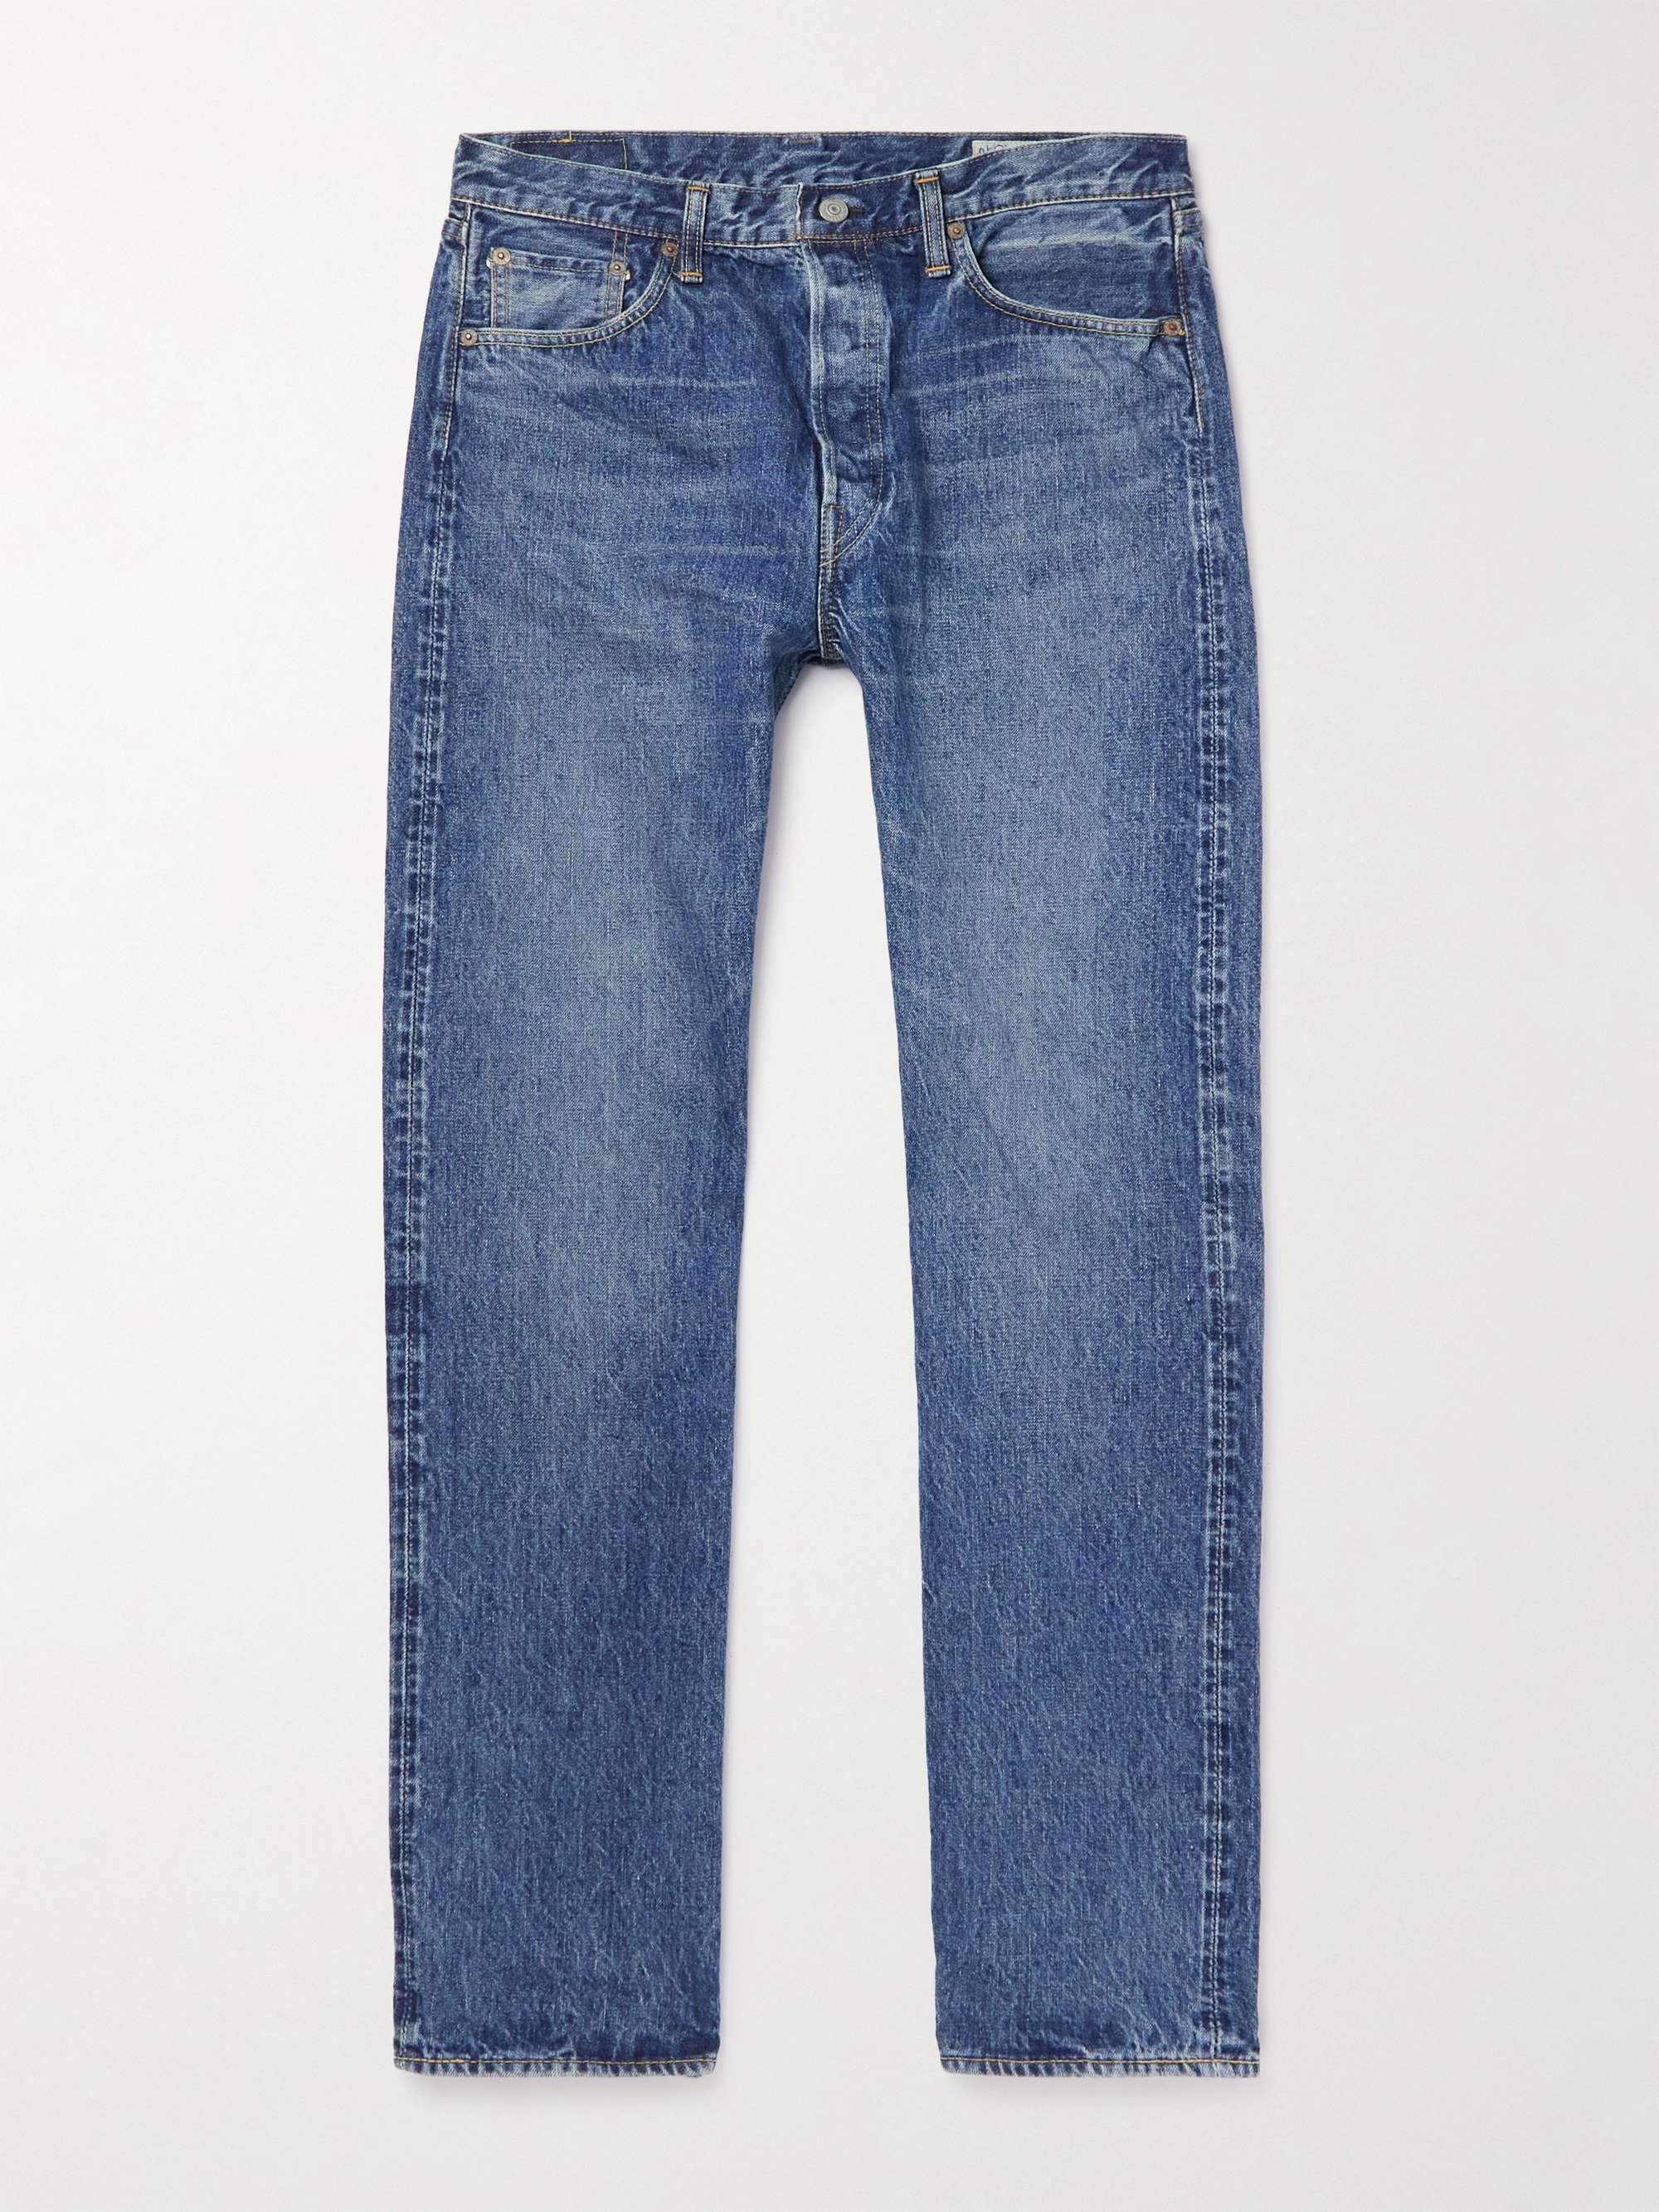 ORSLOW 105 Straight-Leg Selvedge Jeans for Men | MR PORTER